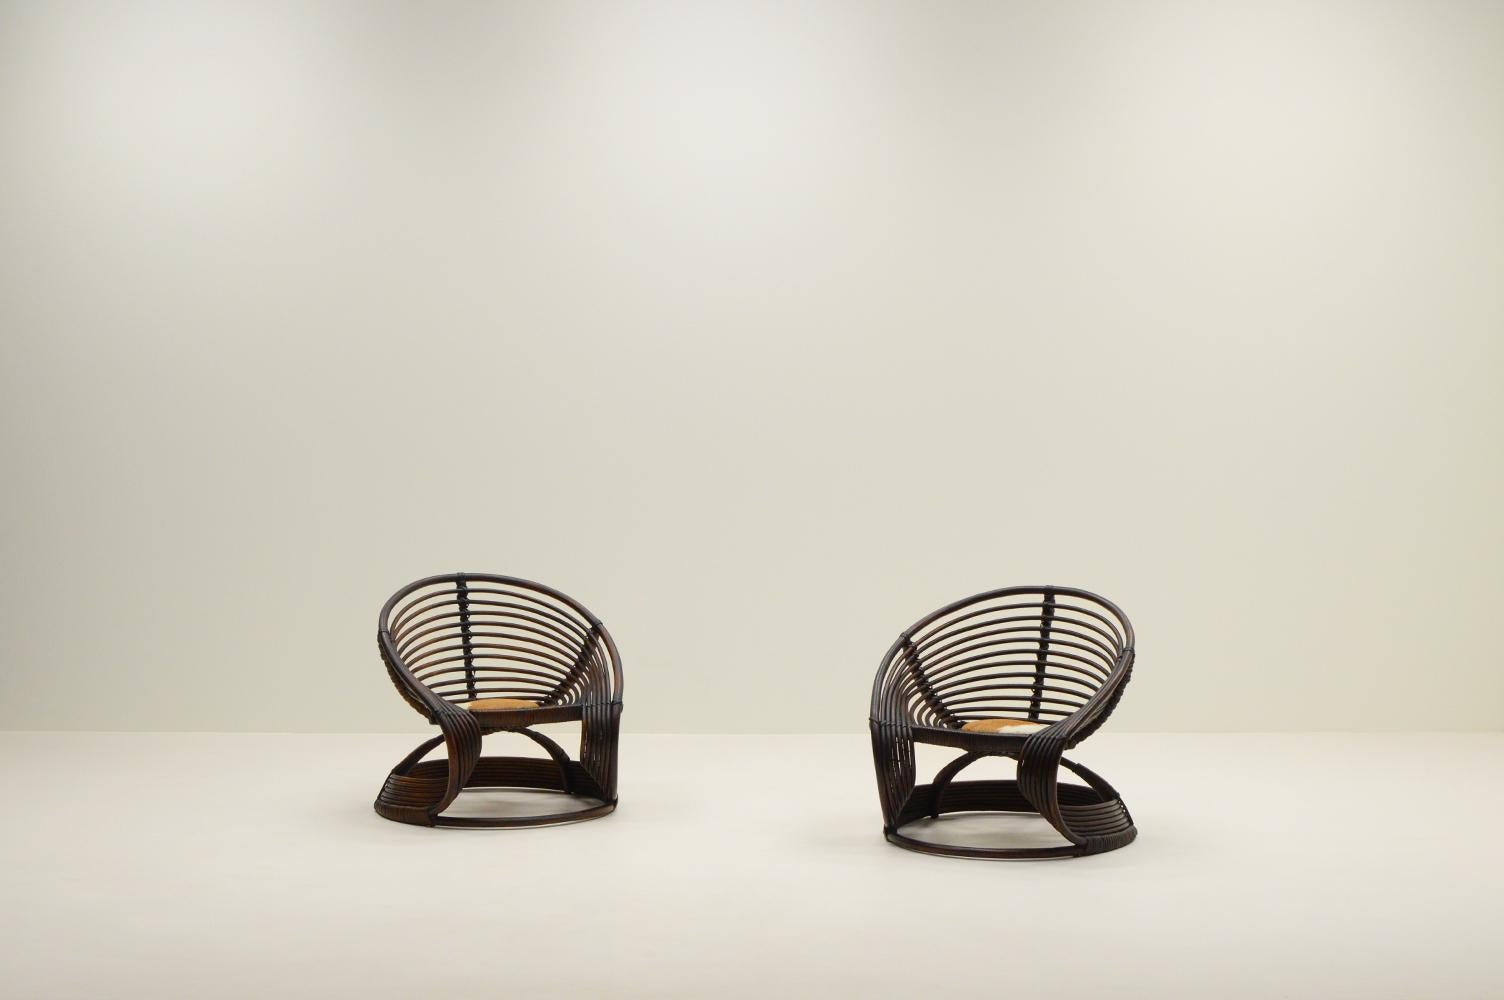 Ensemble de 2 chaises longues en rotin fabriquées à la main, Italie, années 1960. Forme organique et belle couleur / patine. Avec petit coussin en peau de vache rembourré. En bon état vintage.

Demandez un devis pour obtenir les derniers tarifs